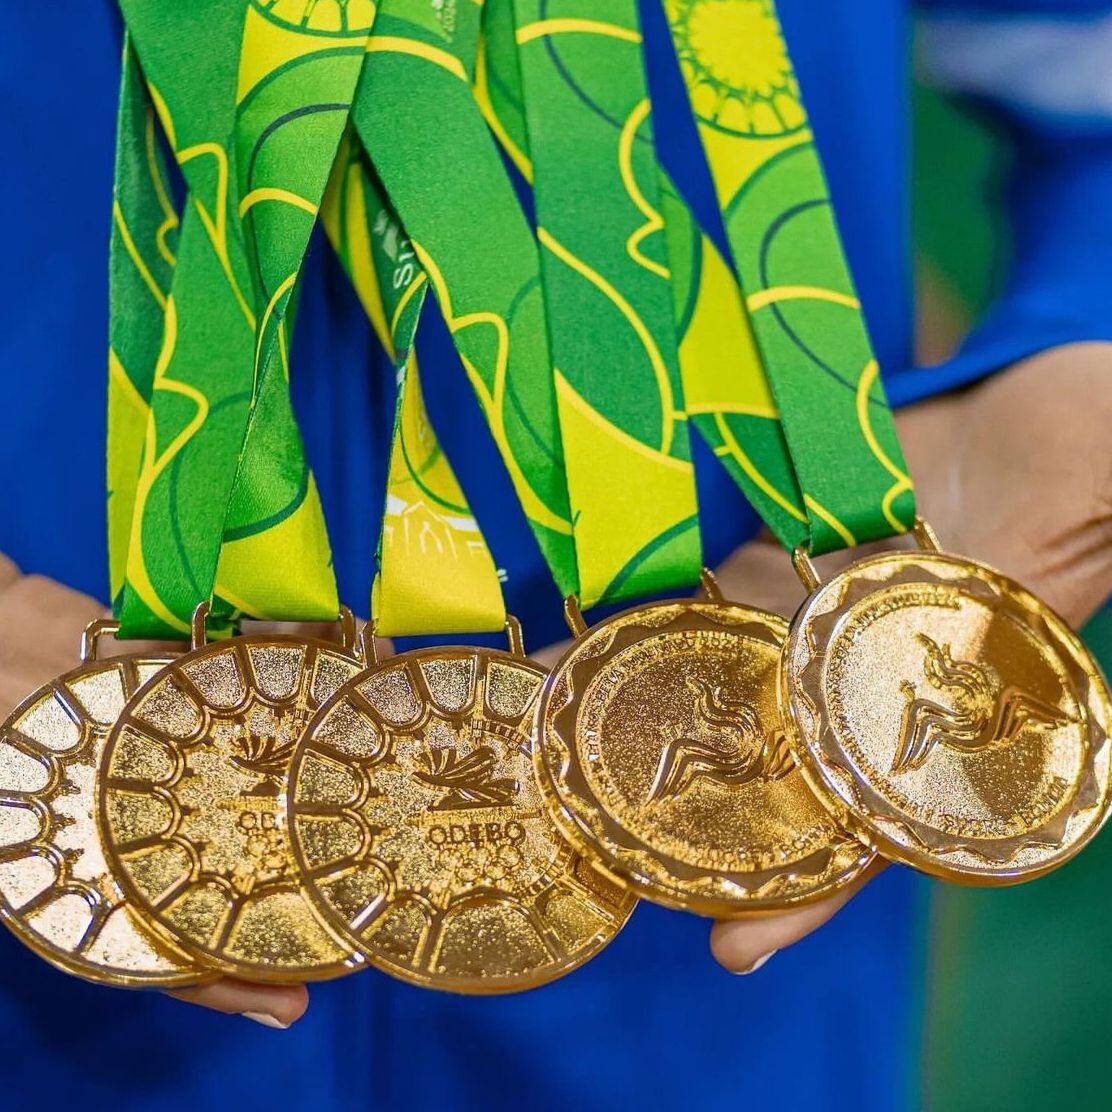 Alyiah Lide, la gimnasta panameña con 5 medallas de oro en los Juegos Bolivarianos de la Juventud